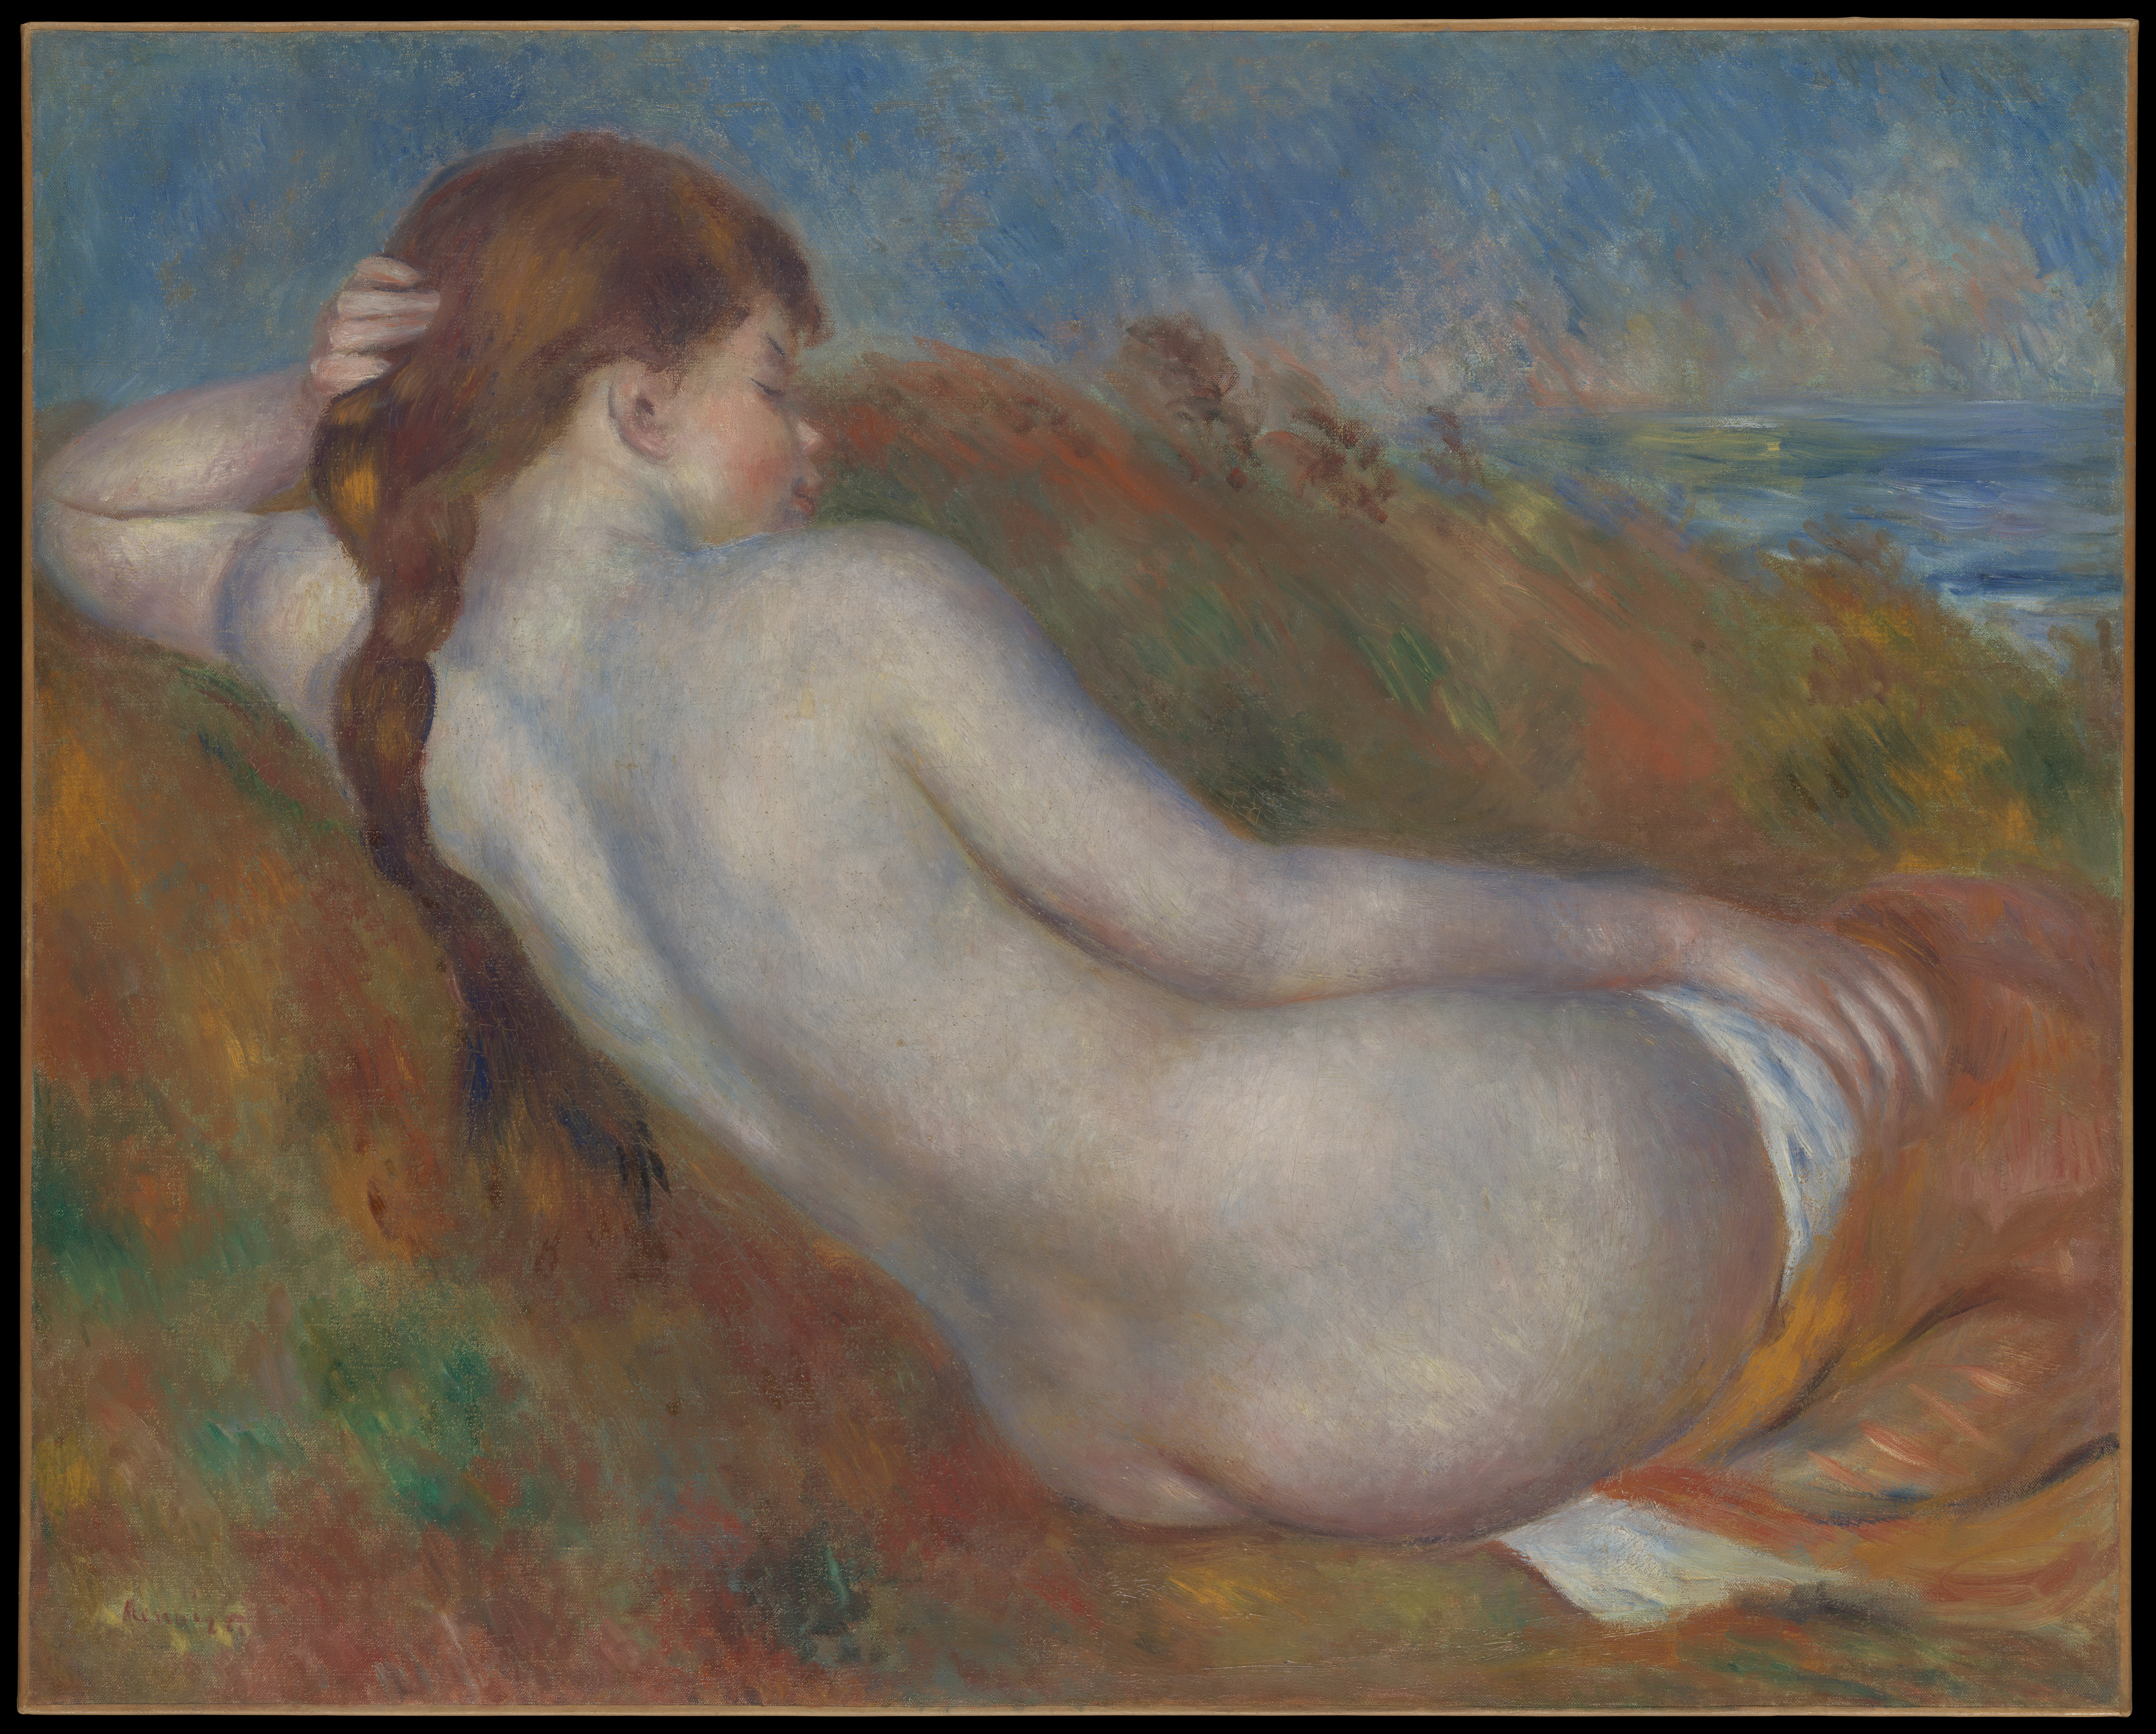 斜躺的裸女 by Pierre-Auguste Renoir - 1883 - 65.1 x 81.3 cm 